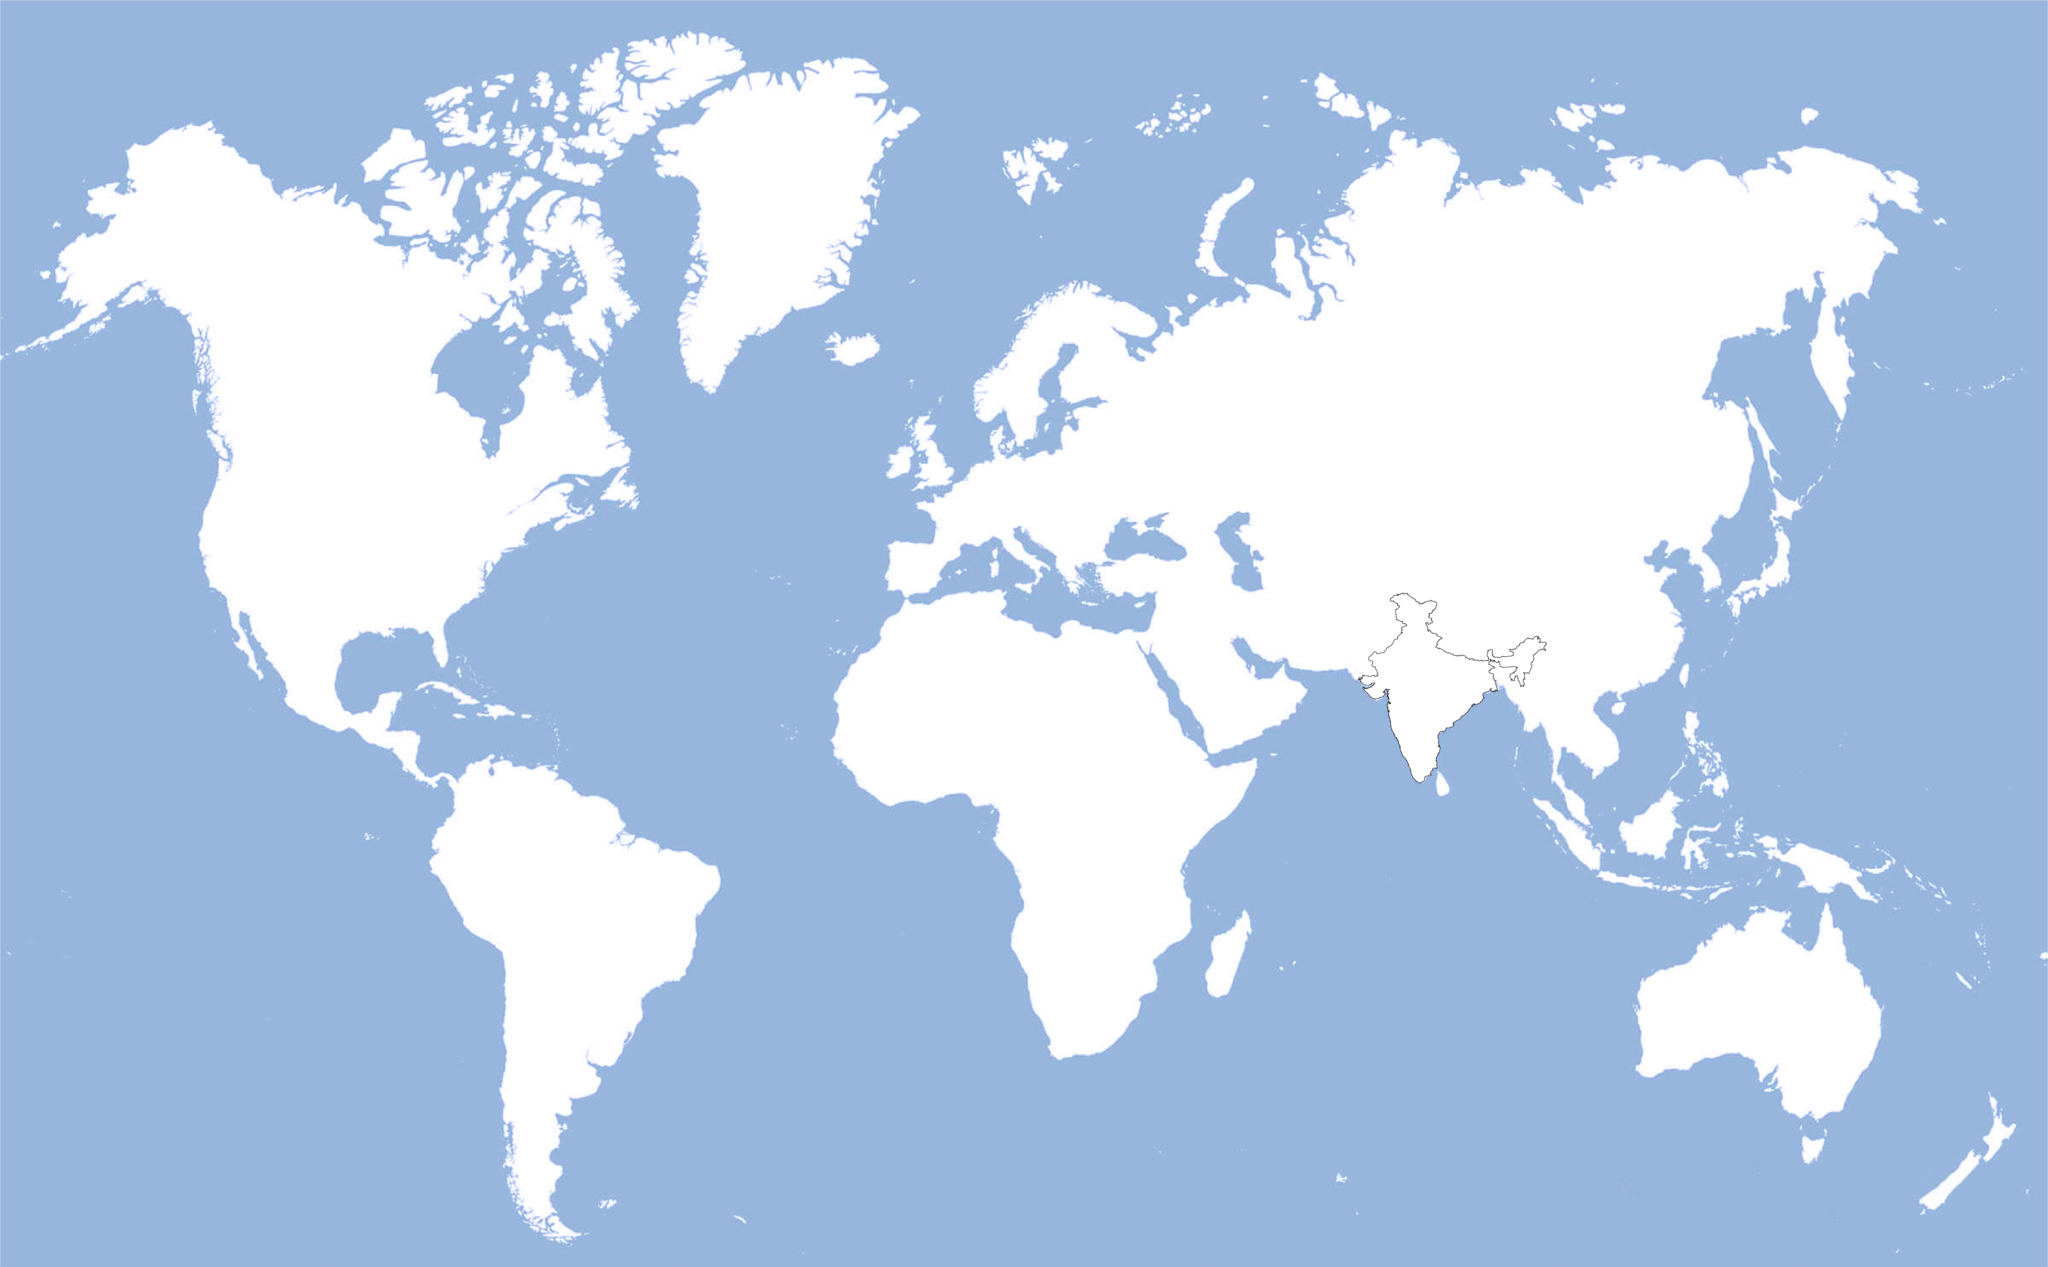 India on World Map